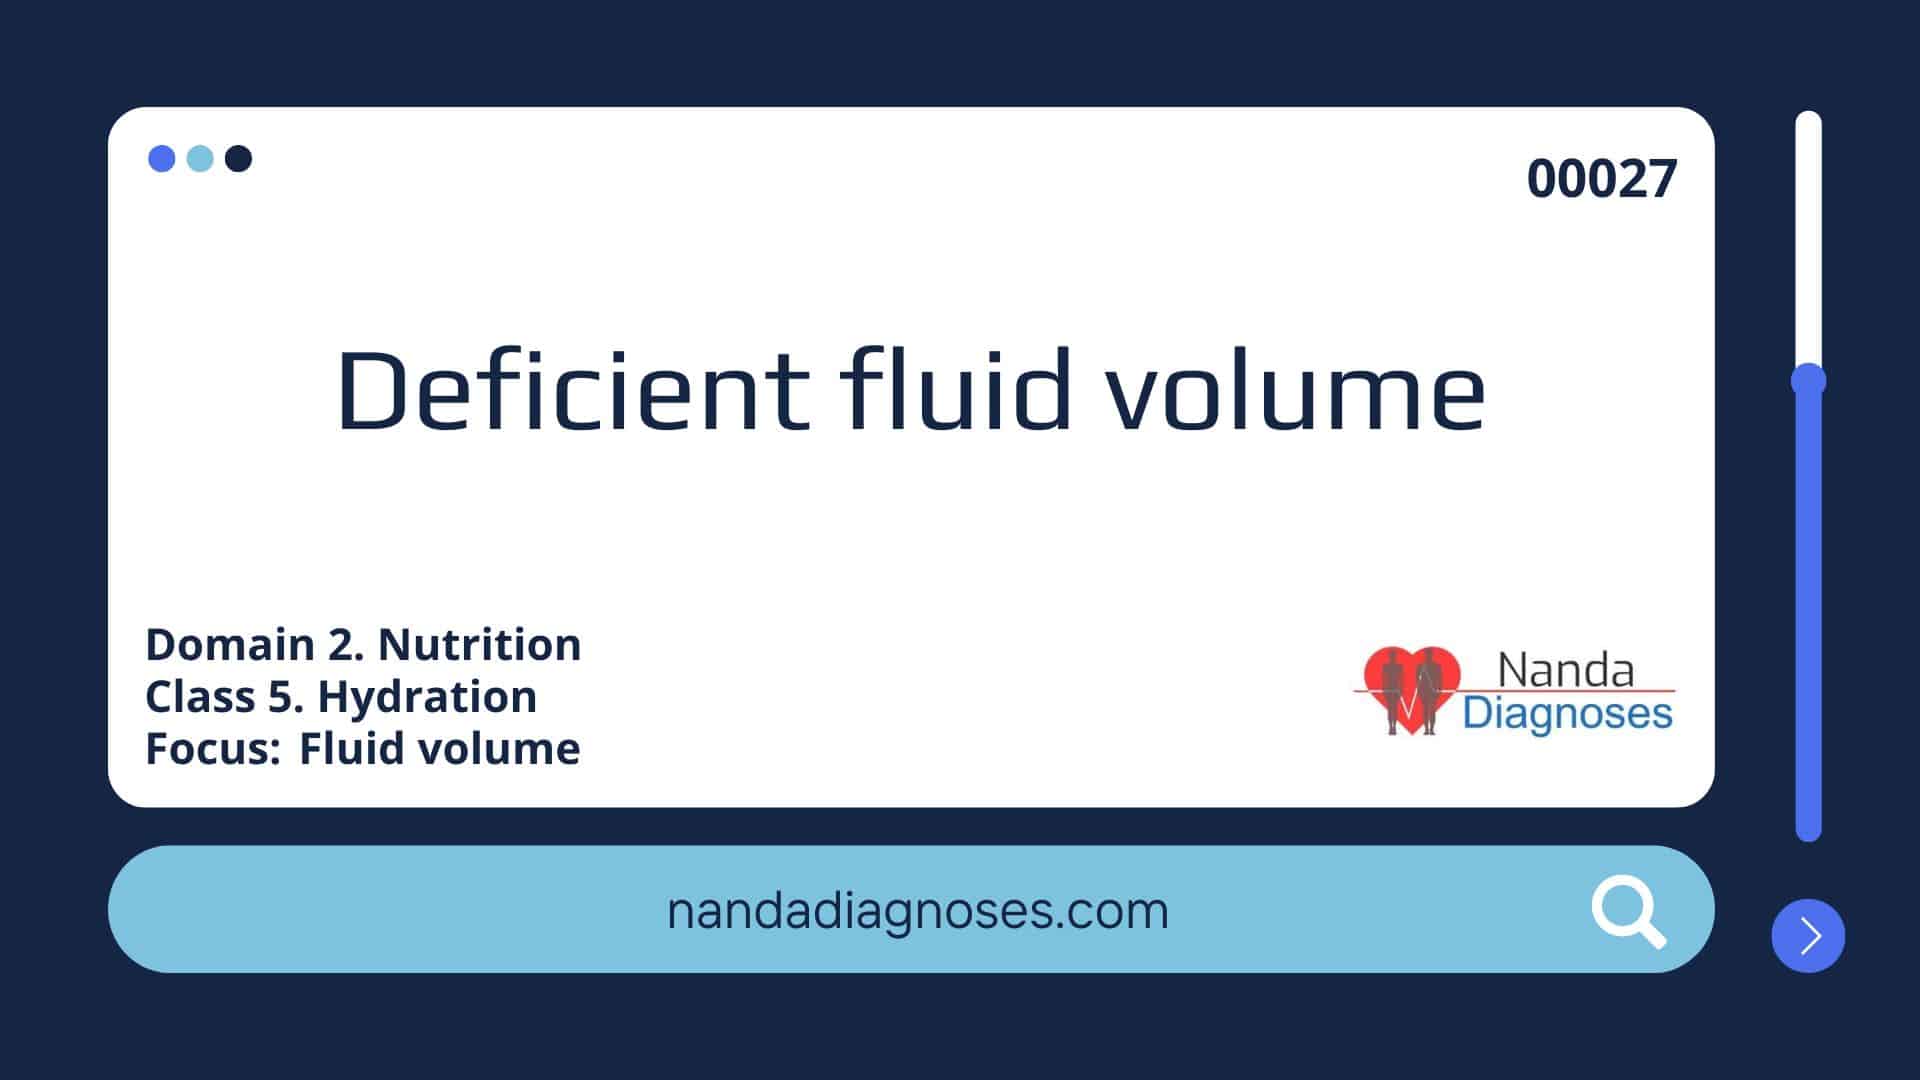 Nursing diagnosis Deficient fluid volume